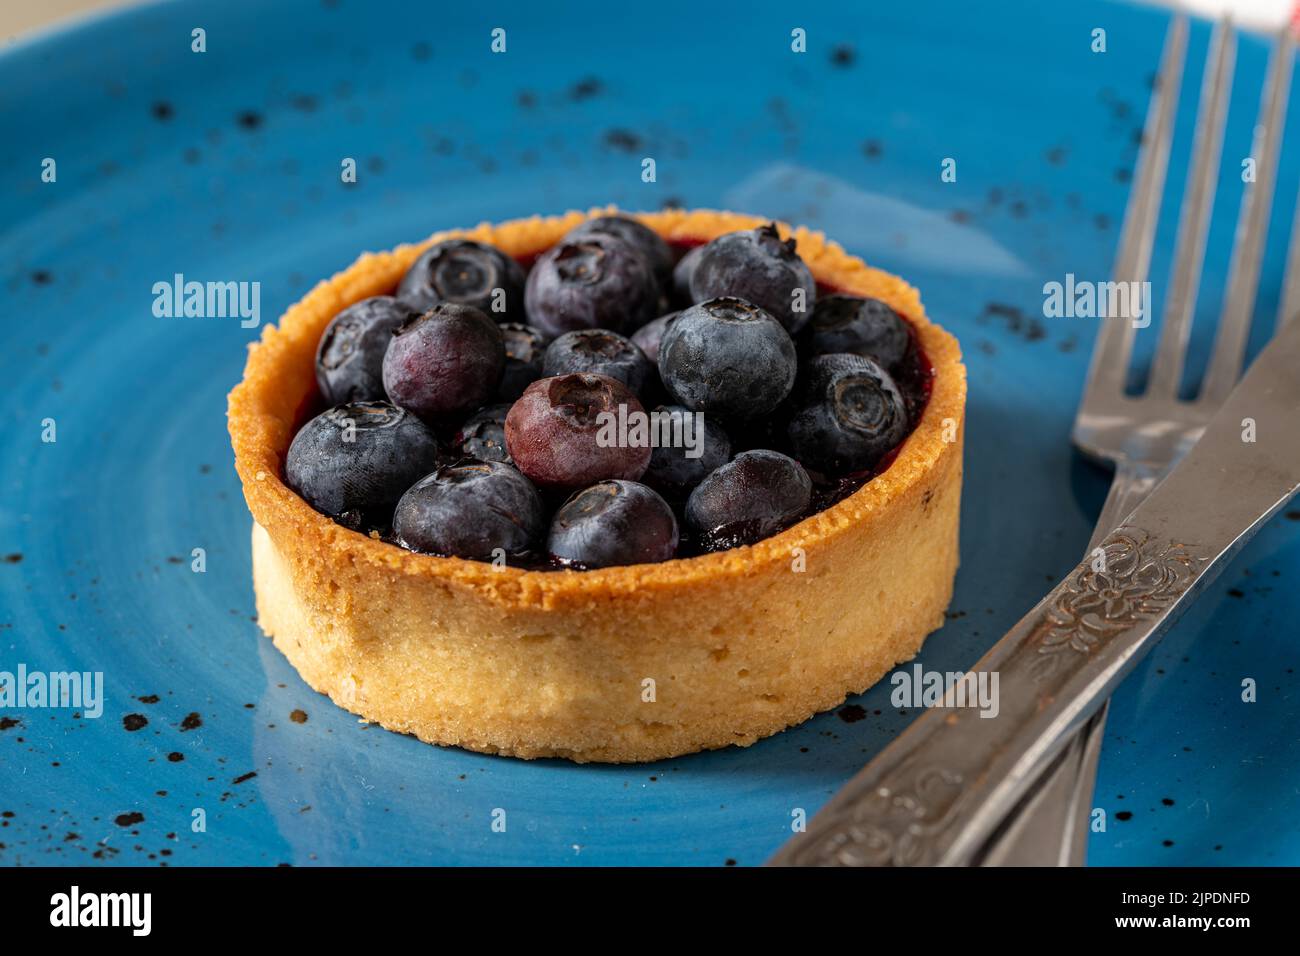 Freshly baked blueberry tart on a blue porcelain plate Stock Photo